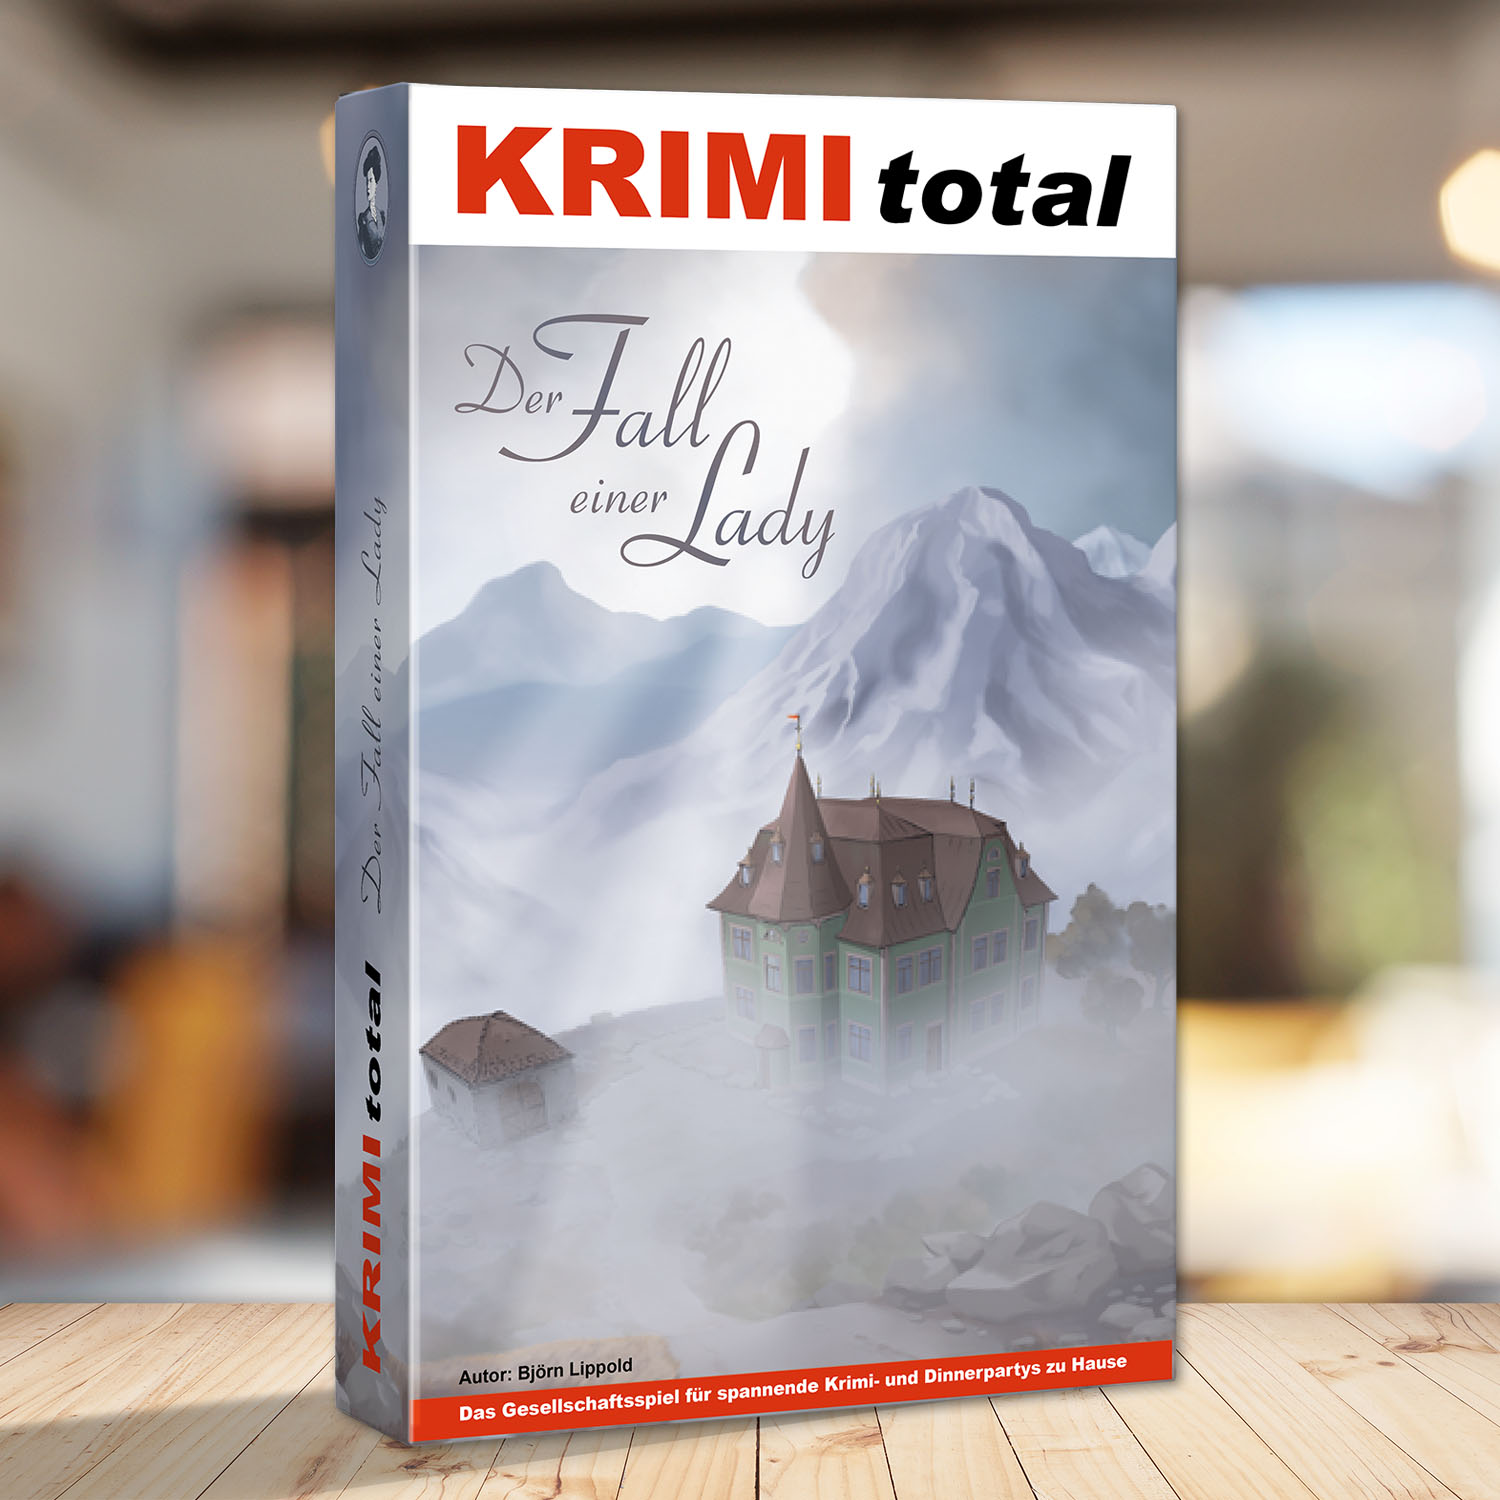 Abbildung eines Spielkartons des Krimidinner Spiels "KRIMI total - Der Fall einer Lady"